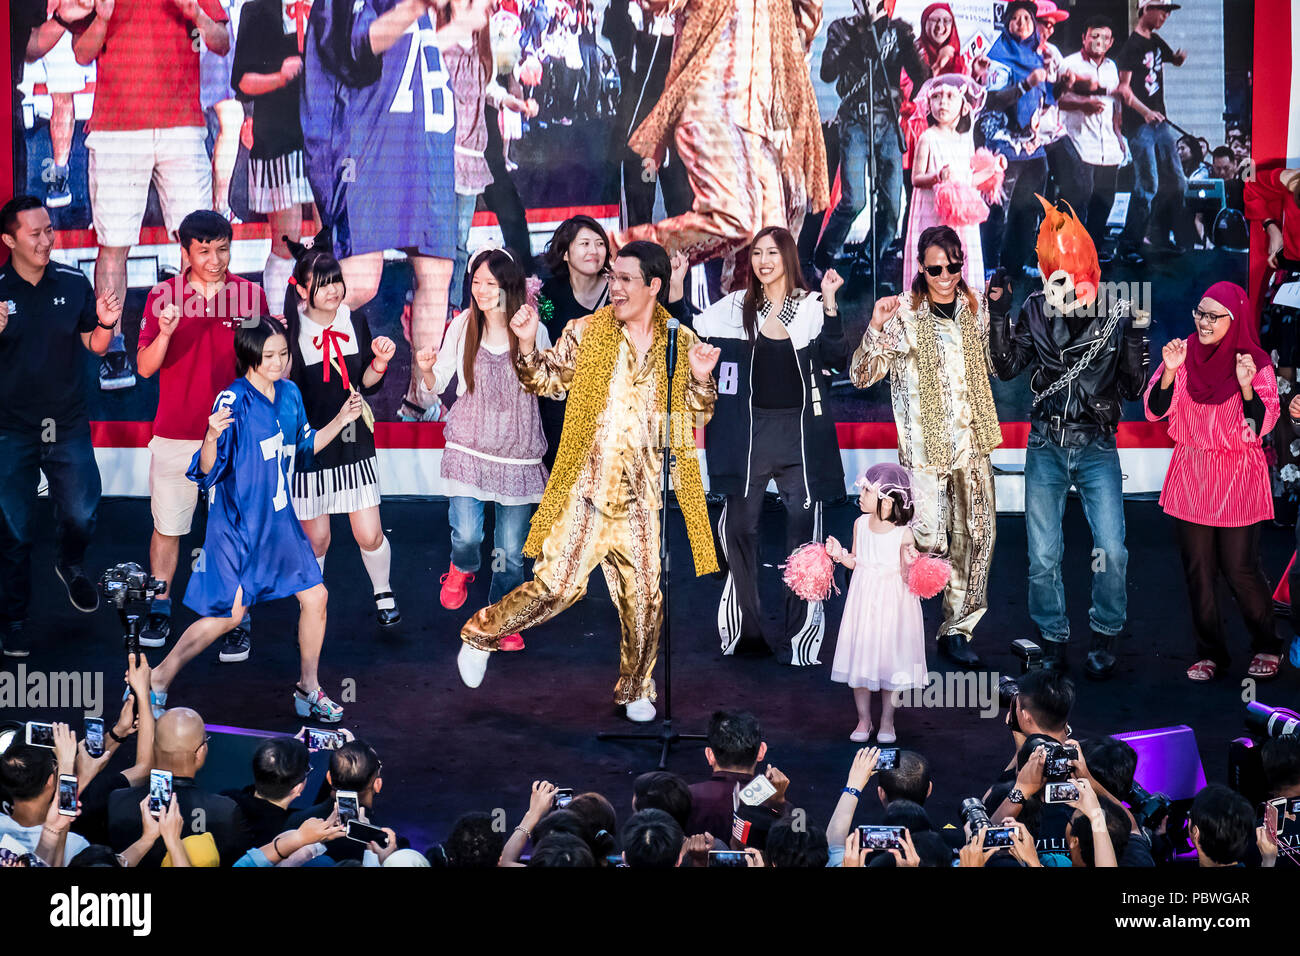 Kuala Lumpur, Malesia. 29 Luglio, 2018. Piko Taro concerto presso il Japan Expo della Malesia a Kuala Lumpur in Malesia nel luglio 29th, 2018. Piko giapponese Taro intrattiene i suoi fan. © Danny Chan/Alamy Live News. Foto Stock